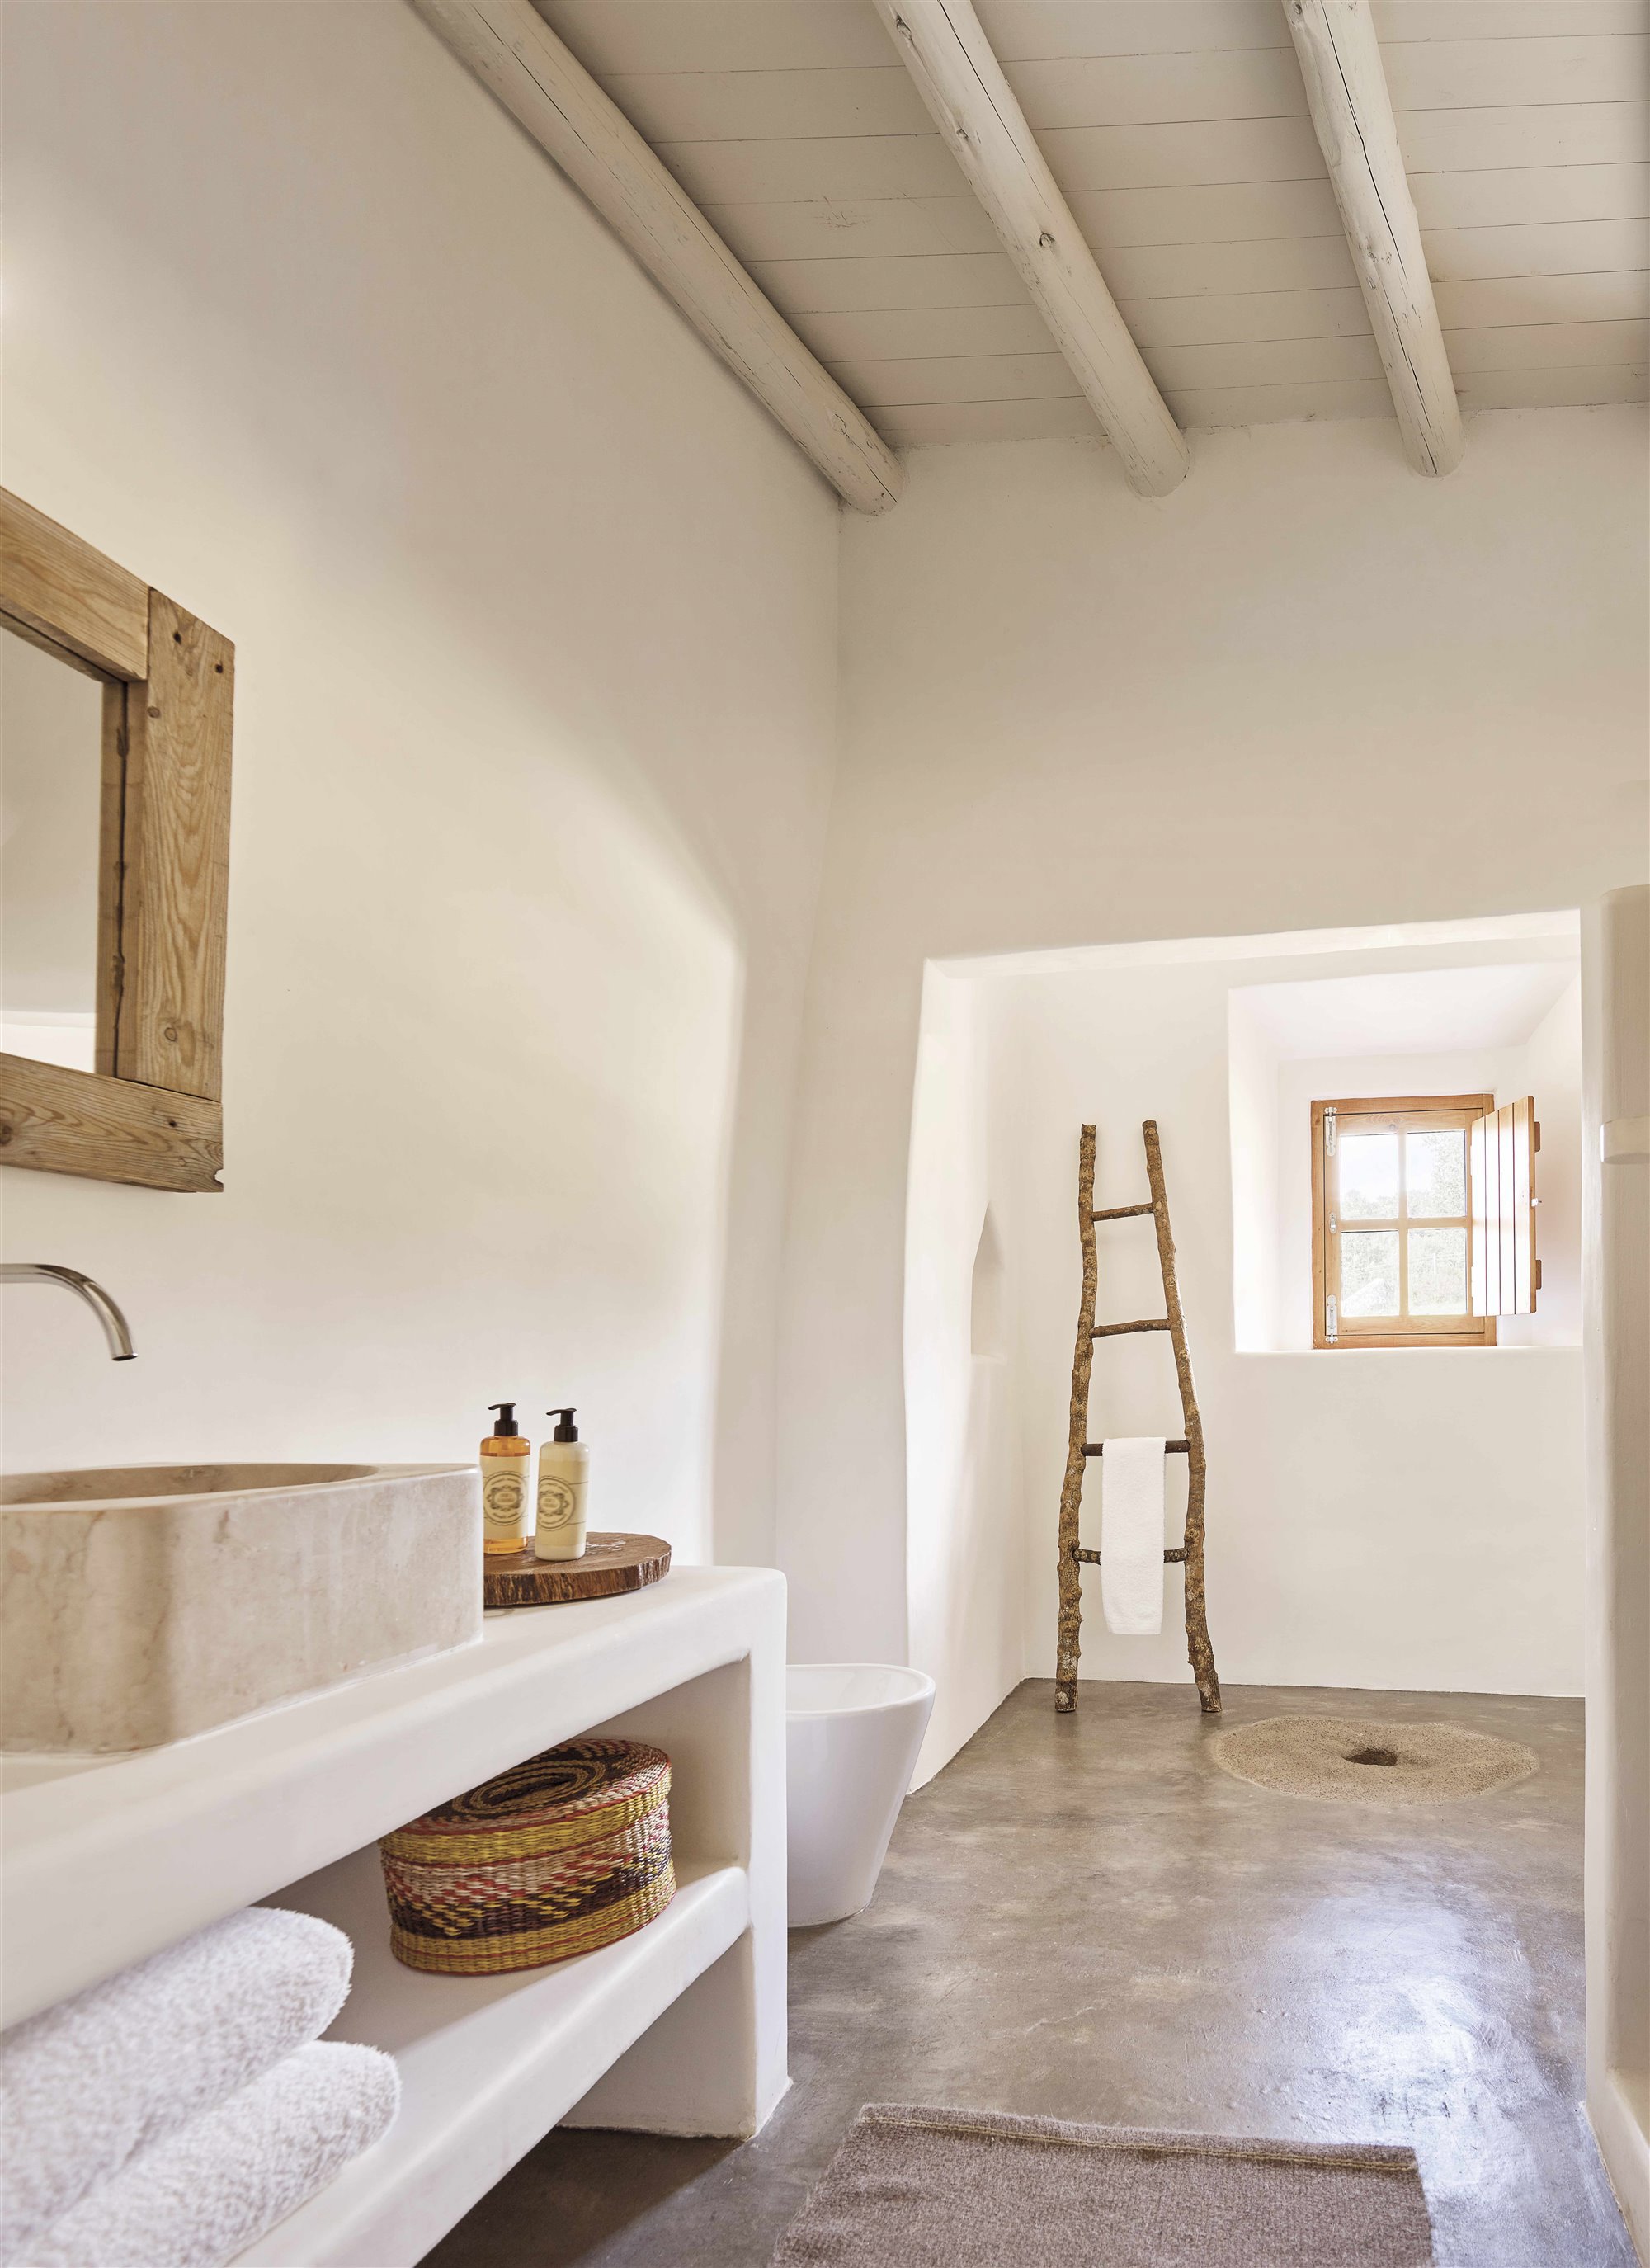 baño rústico blanco y madera con escalera toallero 